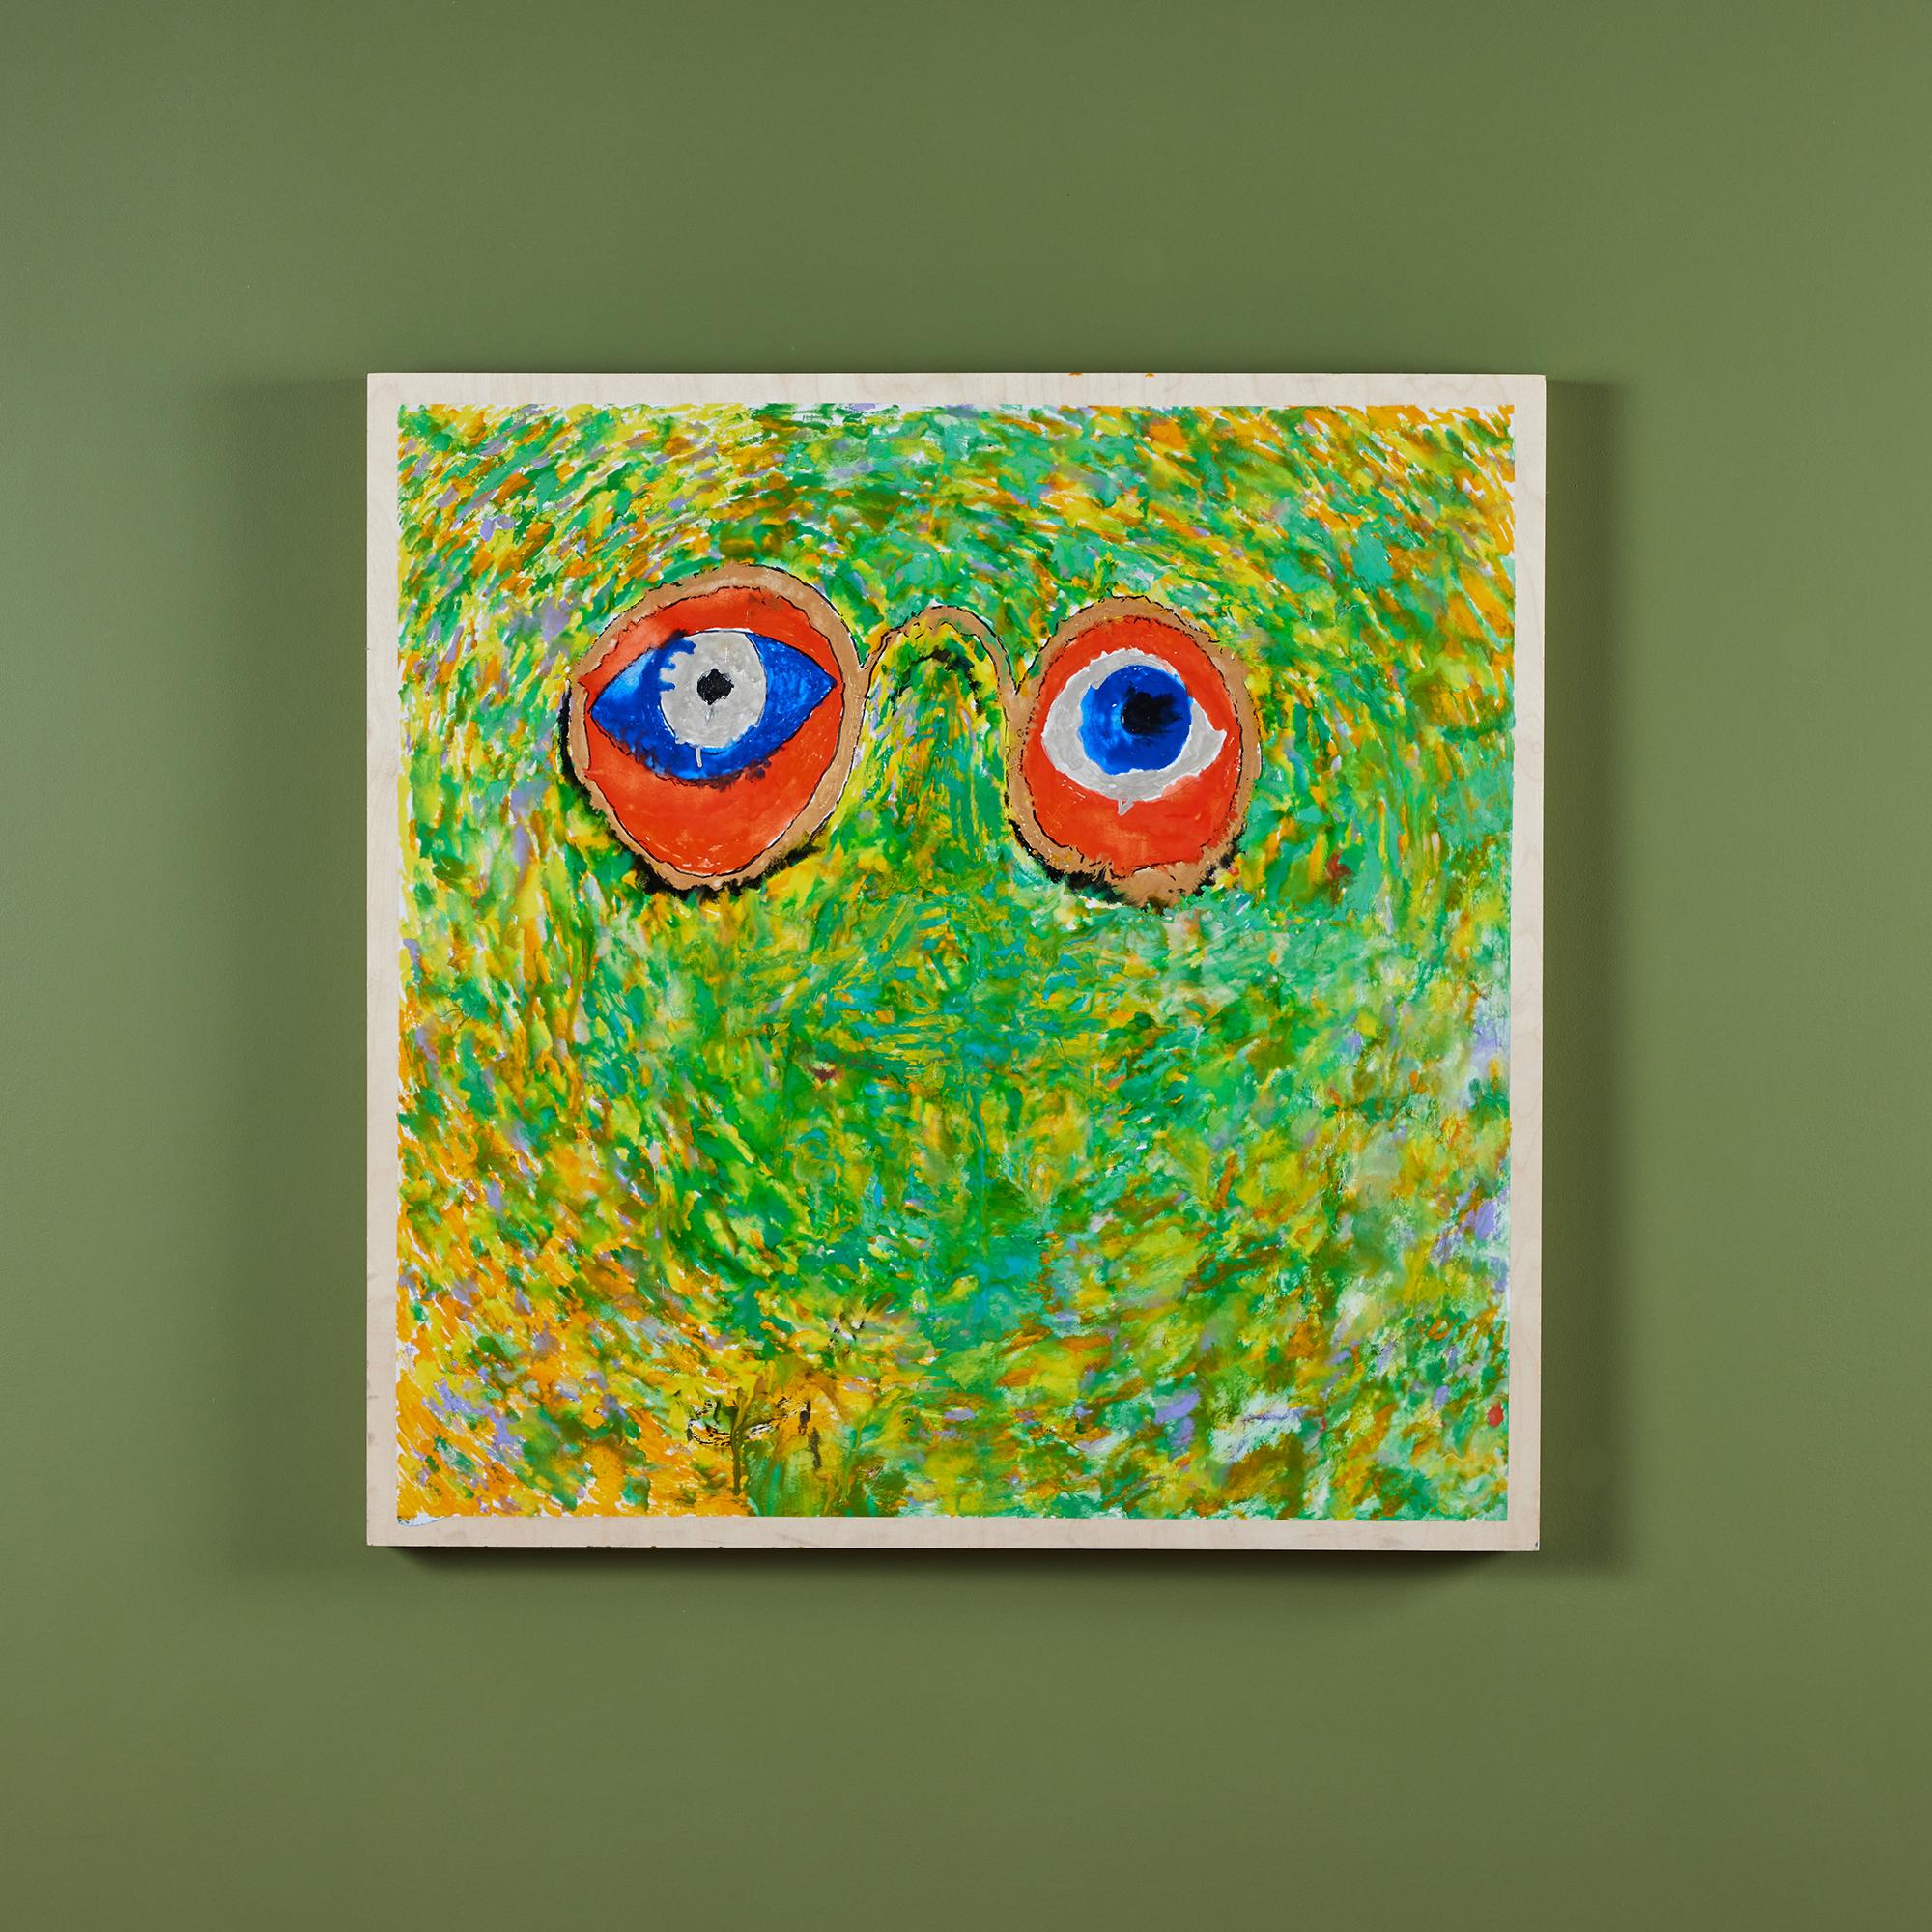 Peinture acrylique sur bois dur de l'artiste de San Diego, Bob Matheny. La peinture représentant des globes oculaires fait un clin d'œil au Great Gatsby et au Dr. AT&T. Eckleberg, comme indiqué au dos du tableau. L'œuvre présente des couleurs néon